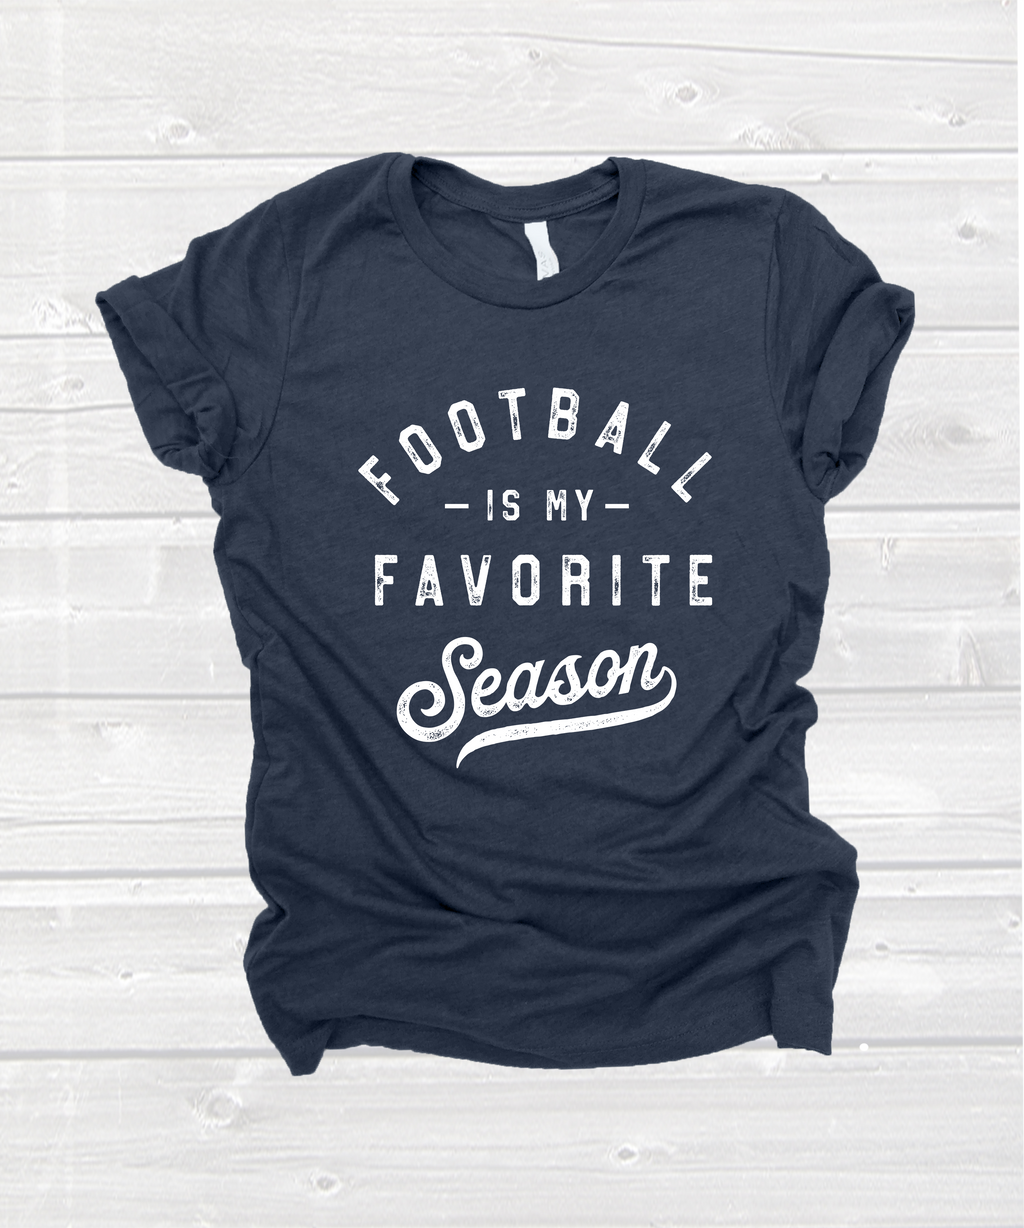 "football is my favorite season" tee in heather navy